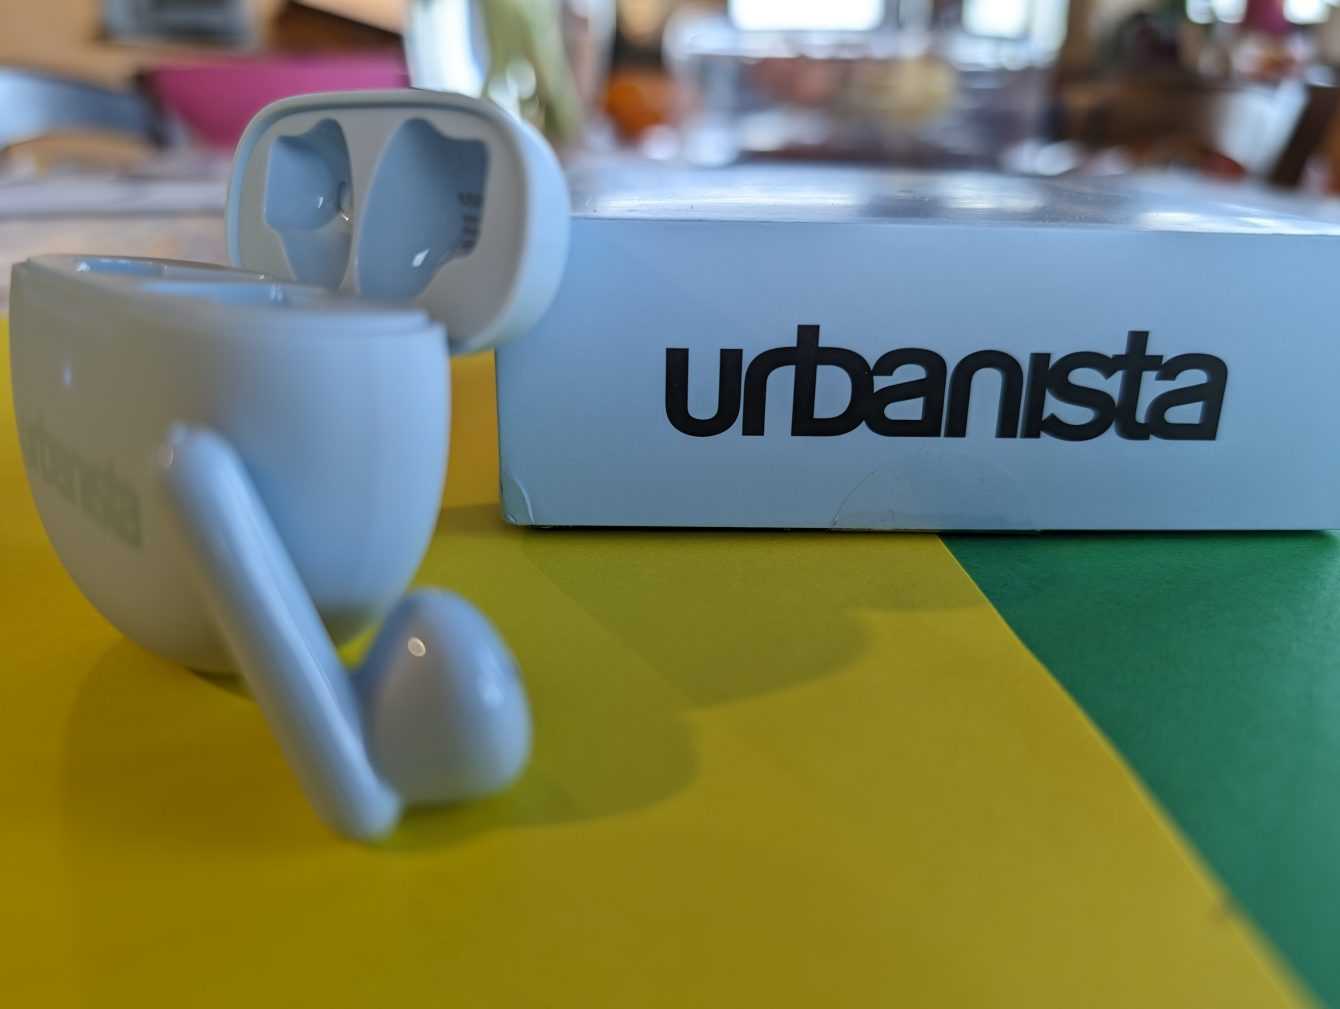 Recensione Urbanista Austin: pratiche ed economiche!